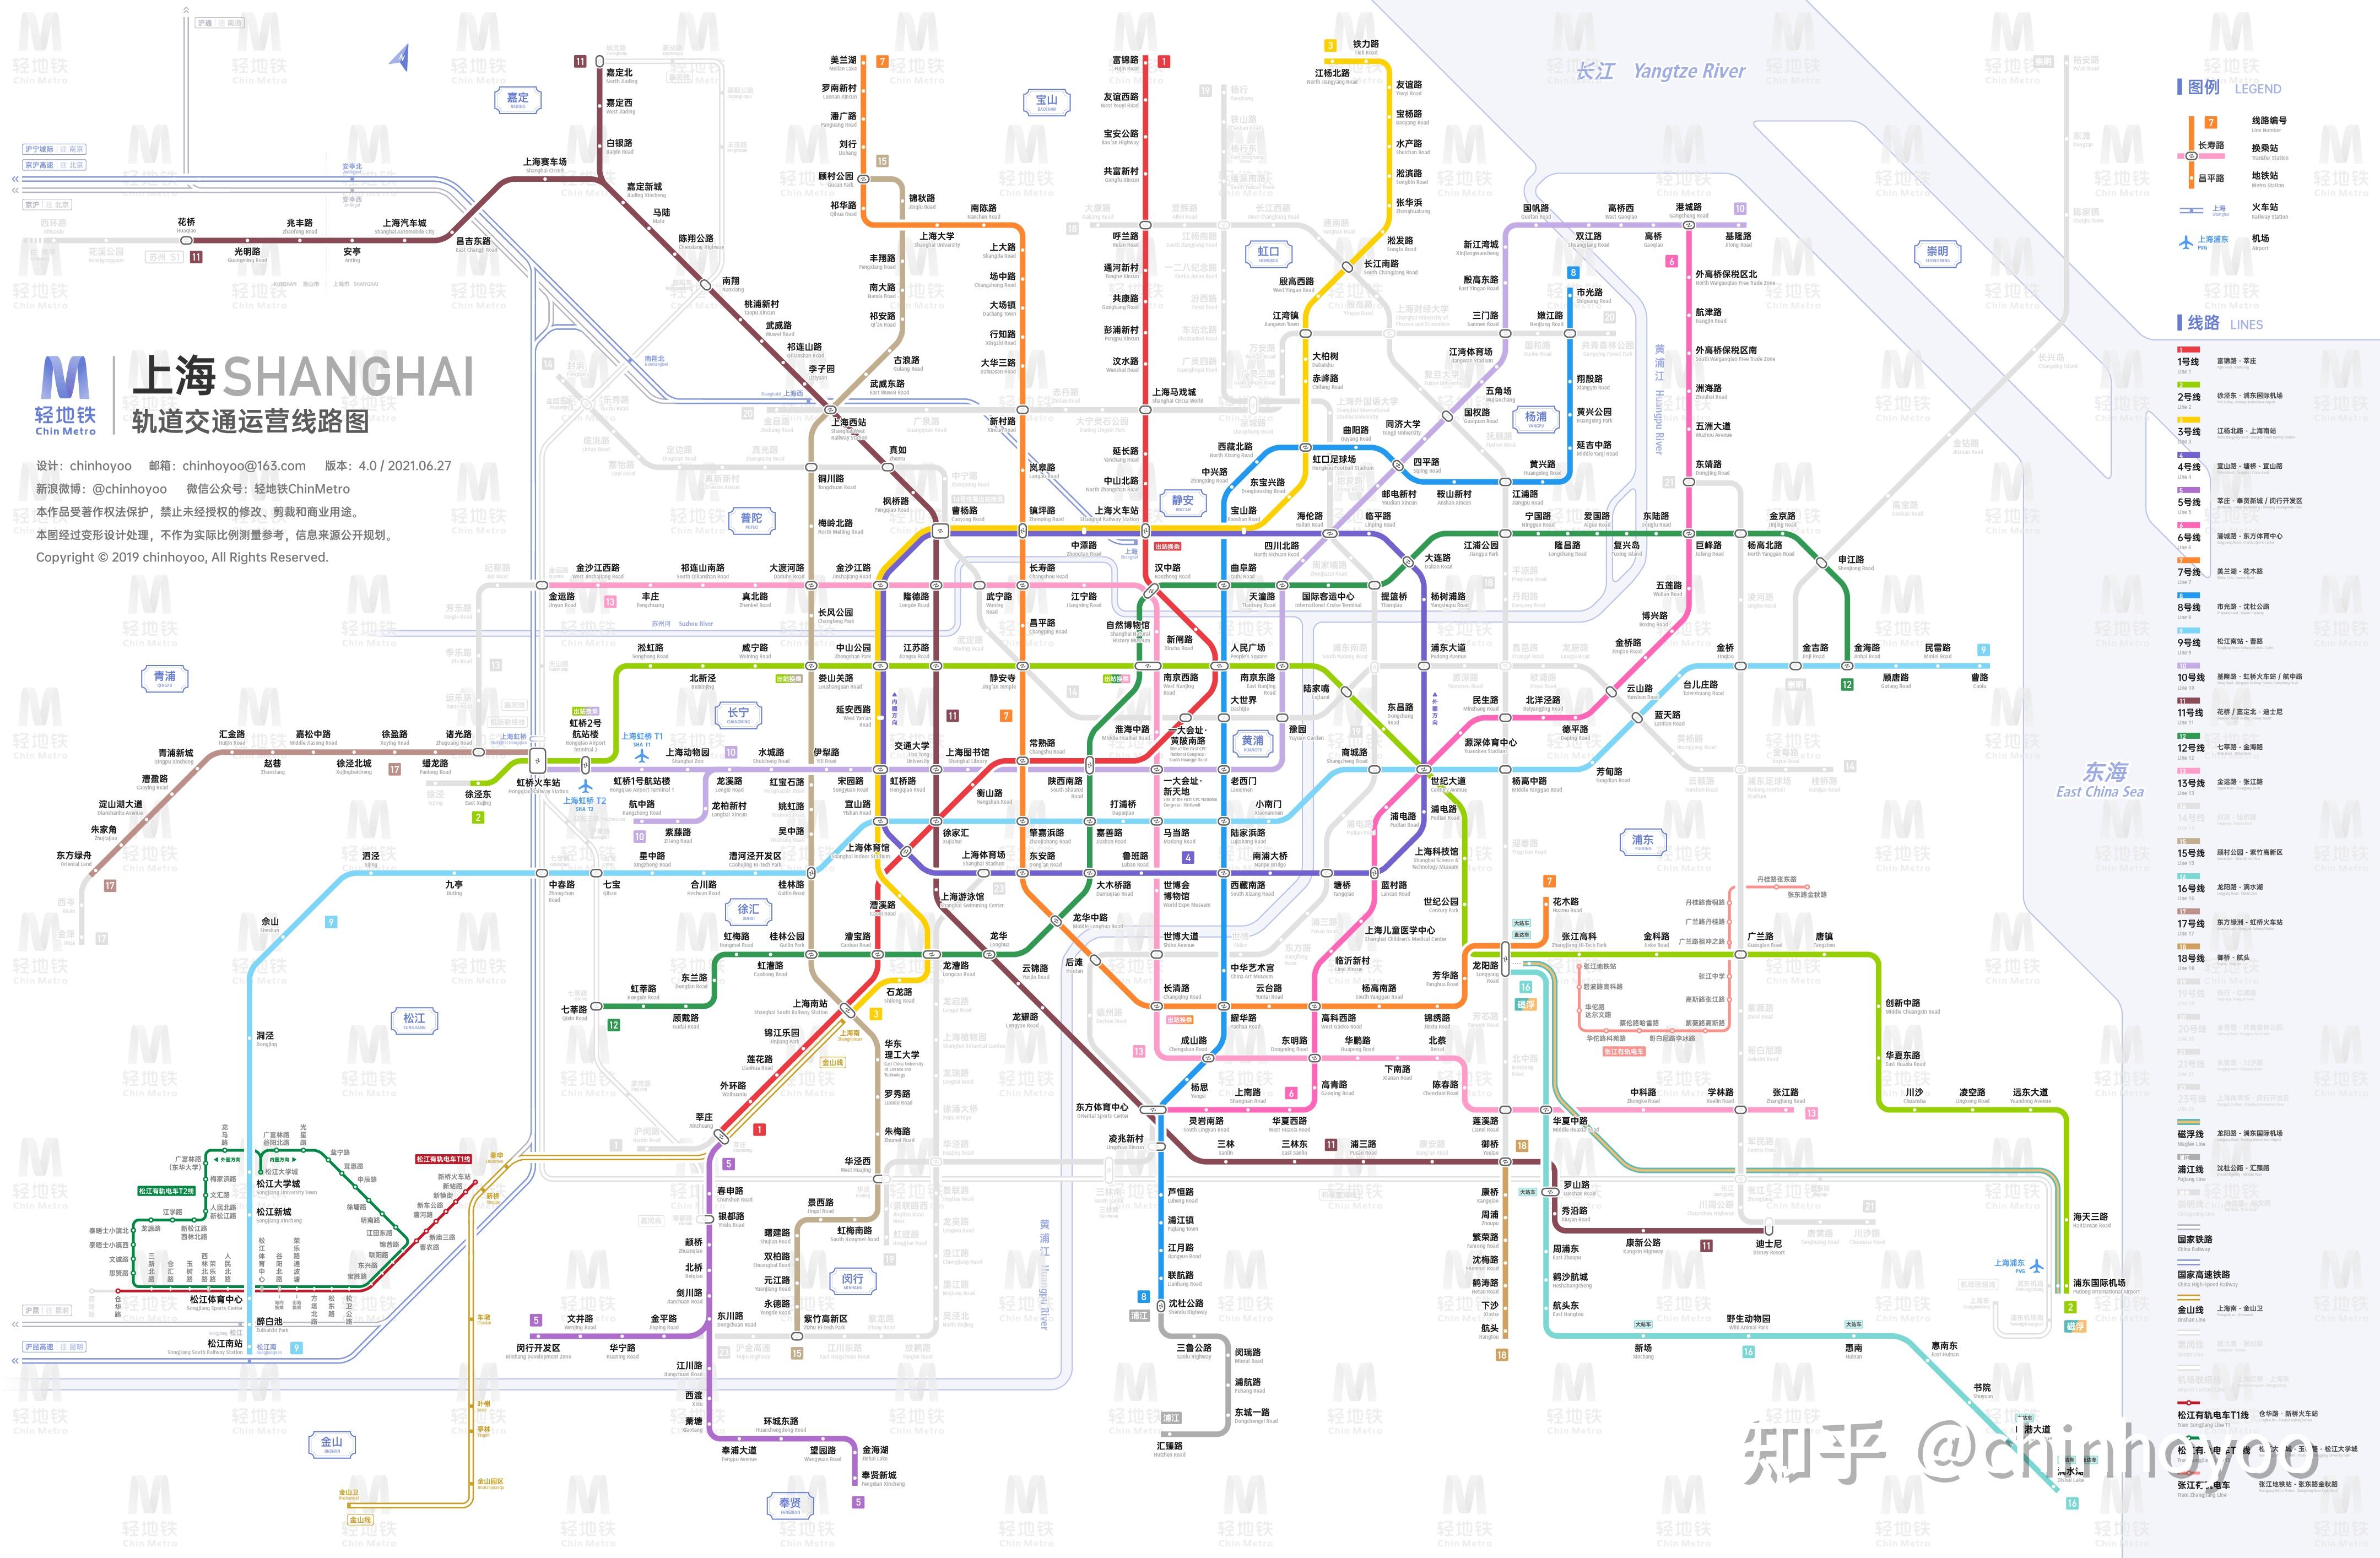 上海地铁地图 2030年图片